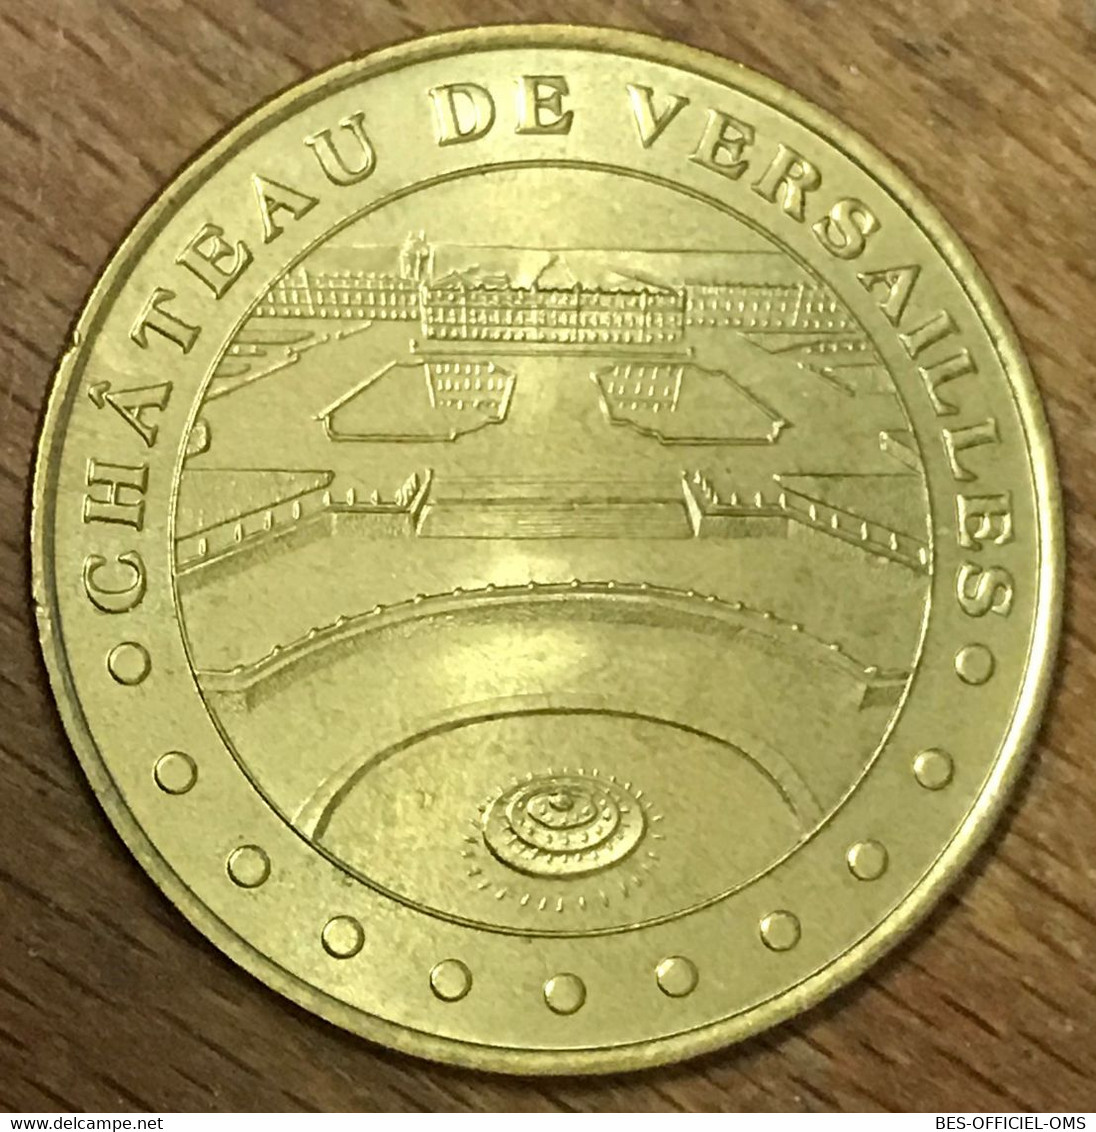 78 CHÂTEAU DE VERSAILLES MDP 2000 MÉDAILLE SOUVENIR MONNAIE DE PARIS JETON TOURISTIQUE MEDALS COINS TOKENS - 2000